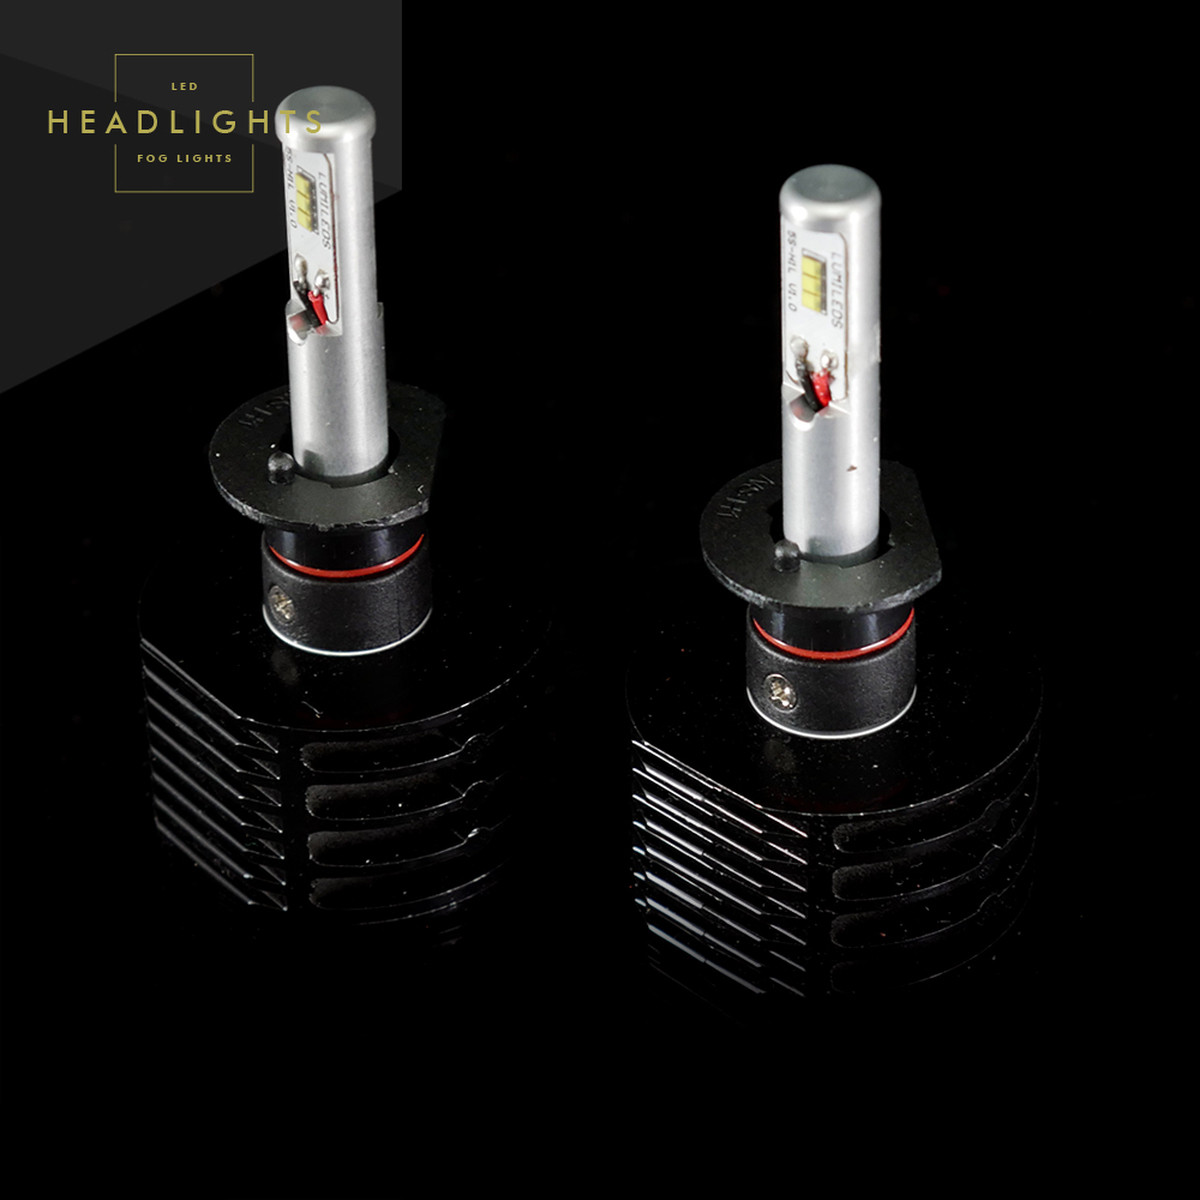 Best ideas about Gtr Lighting Gen 3 Ultra Series Led
. Save or Pin GTR Lighting Ultra Series LED Headlight Bulbs H3 3rd Now.